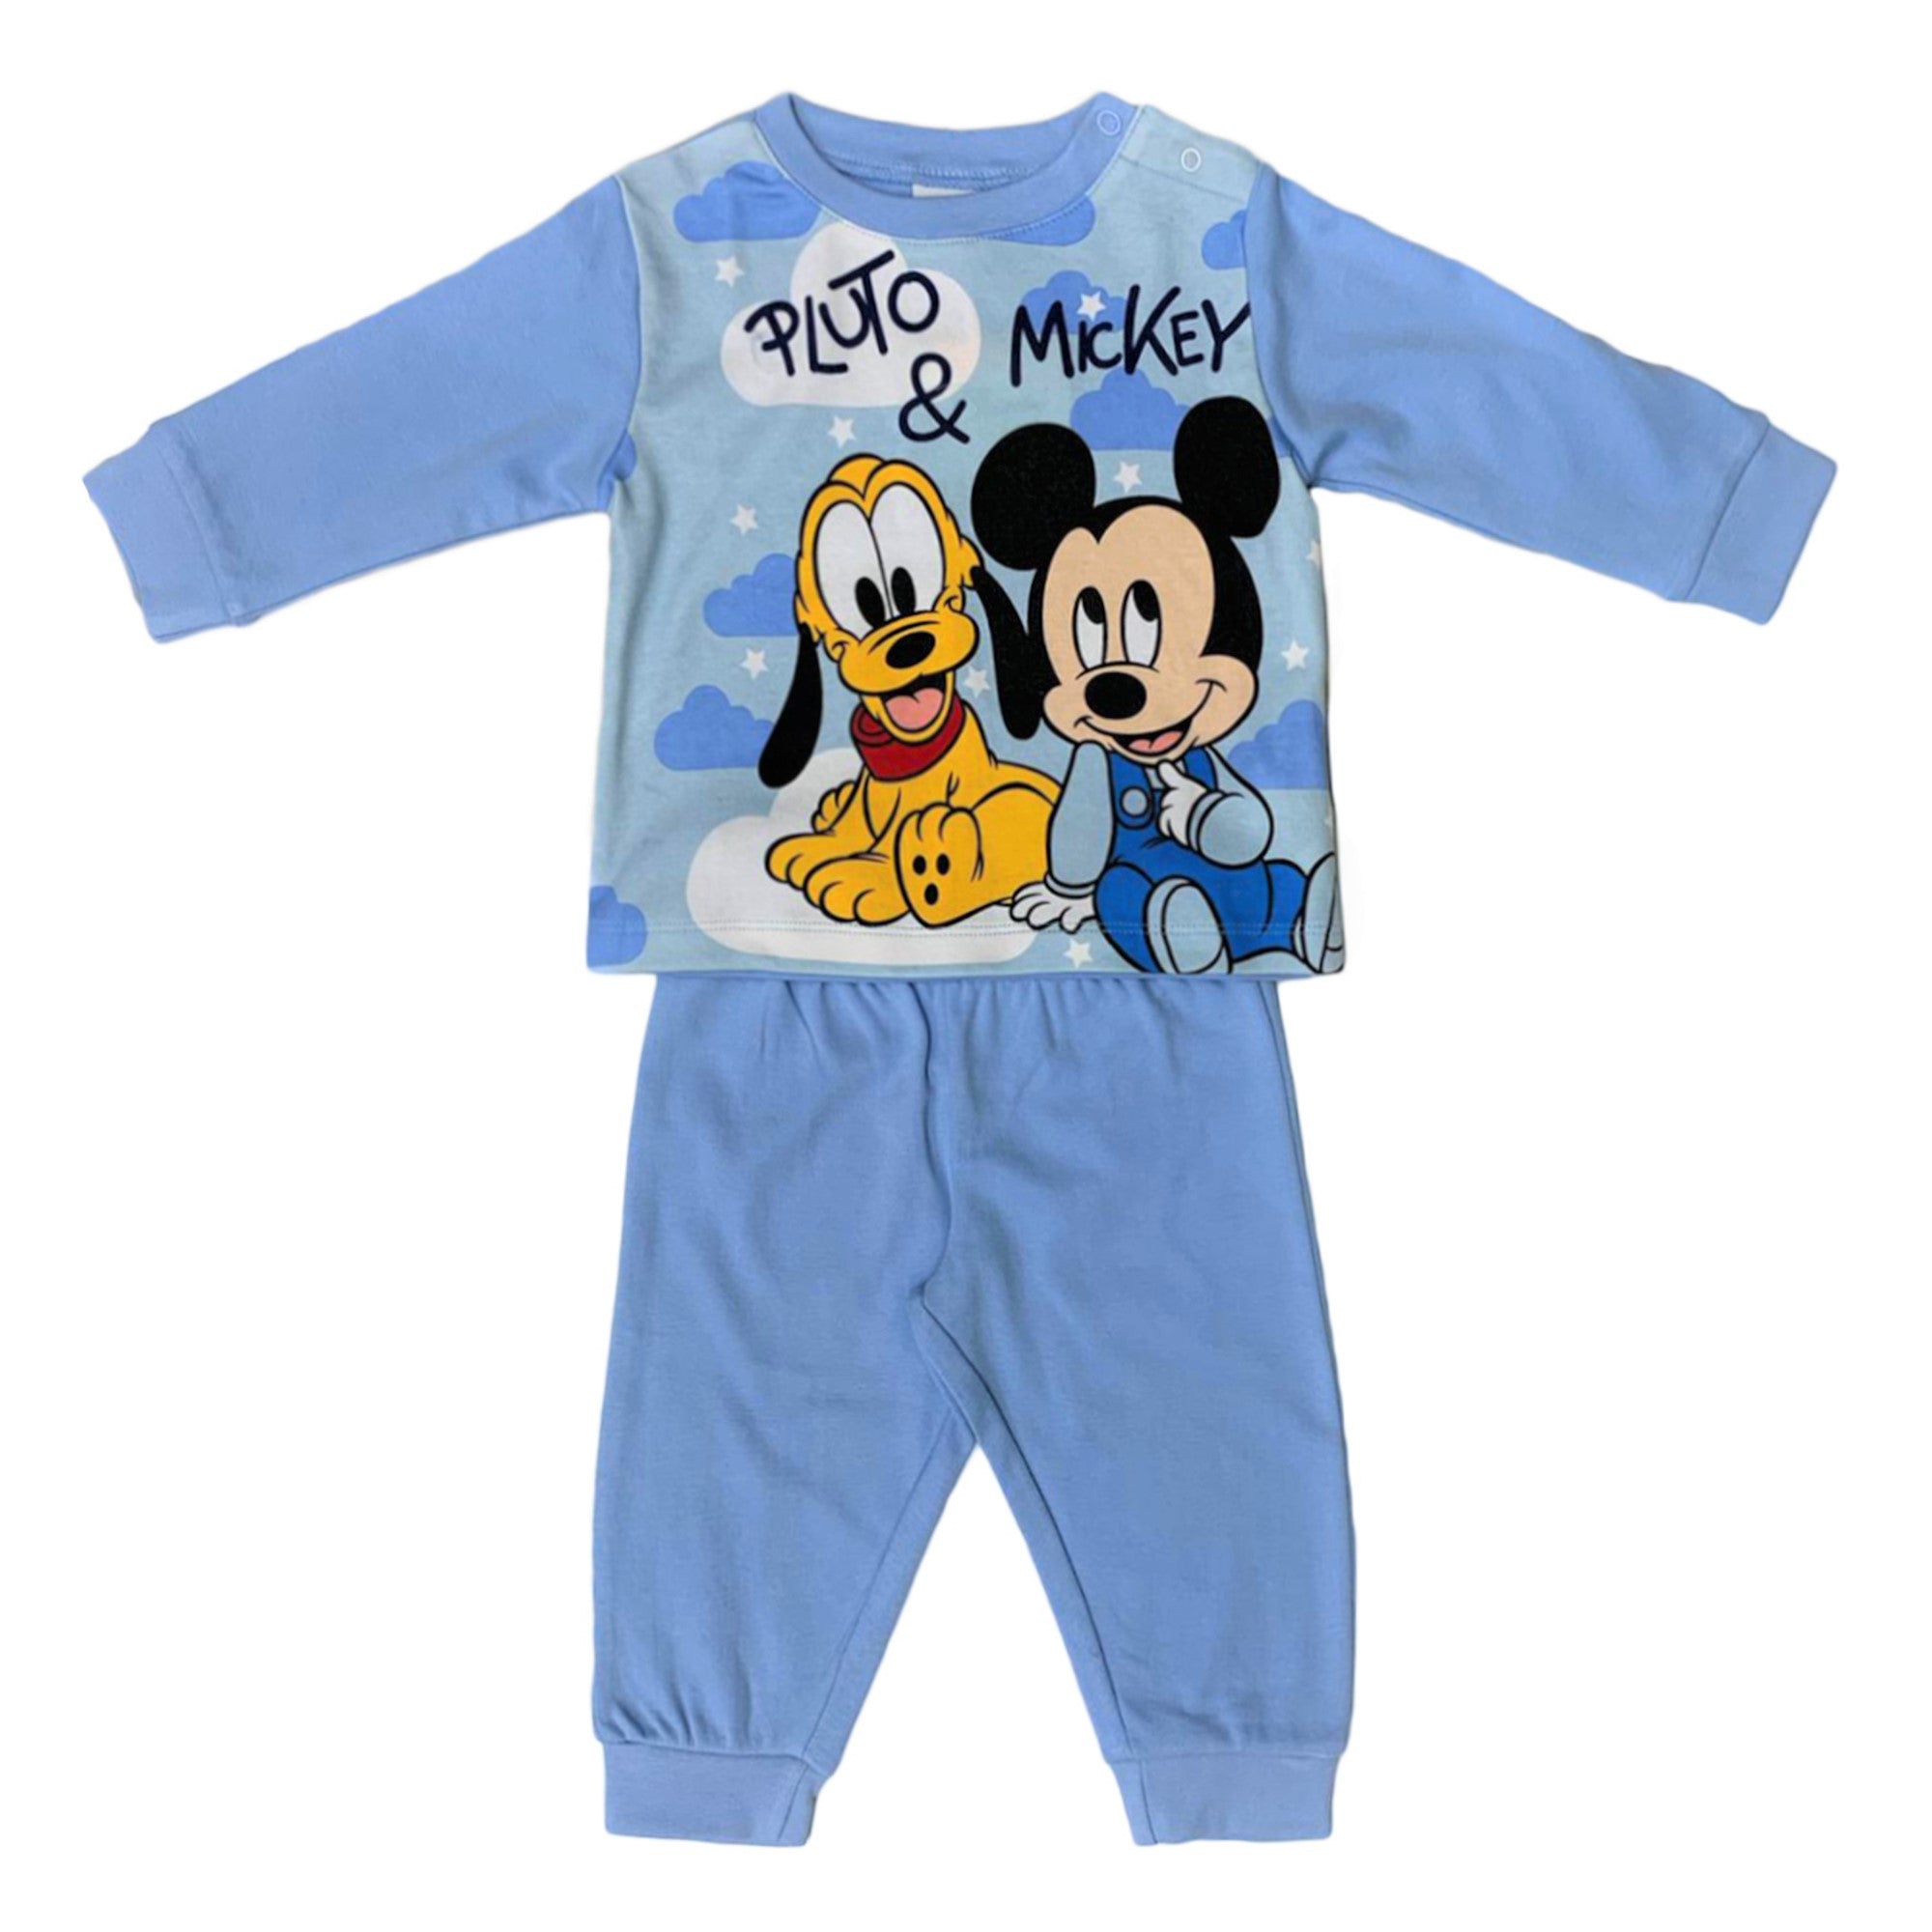 Pigiama ufficiale Disney Mickey Mouse cotone maniche lunghe neonato bambino 3436